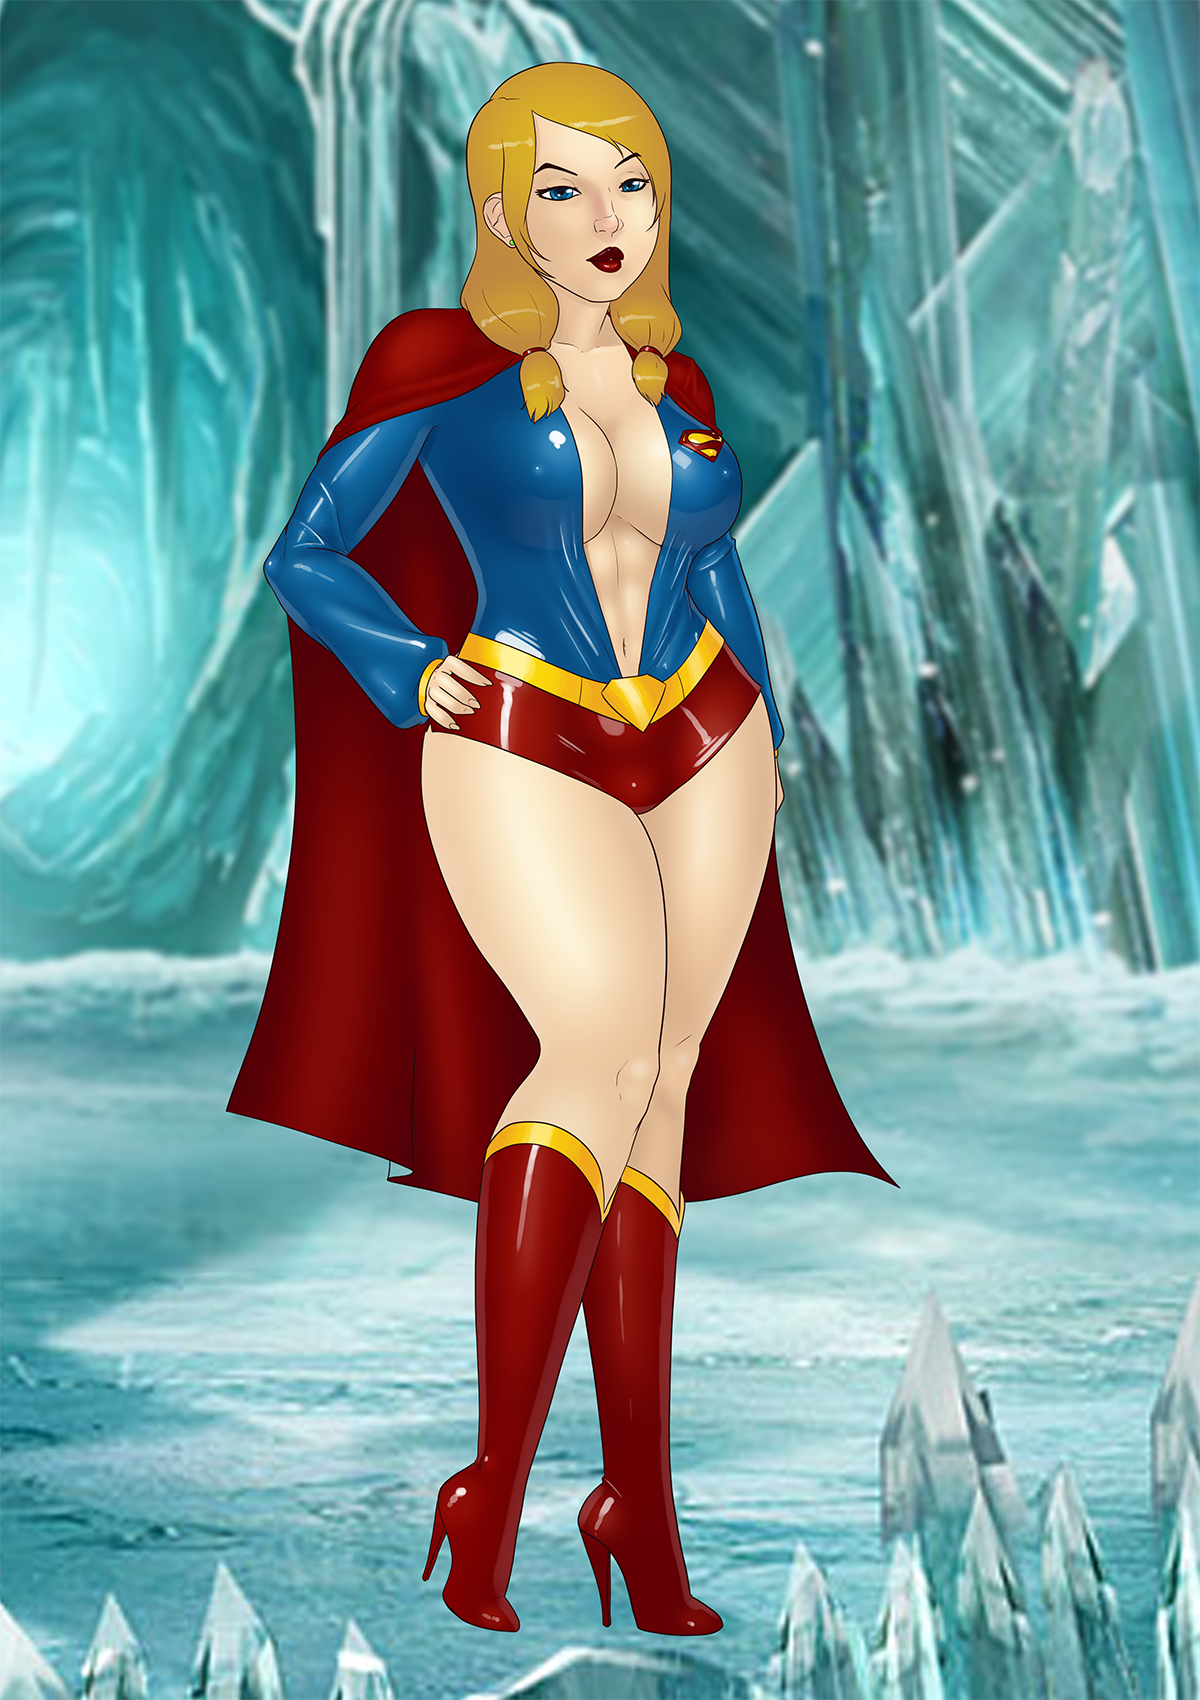 Hot supergirl images